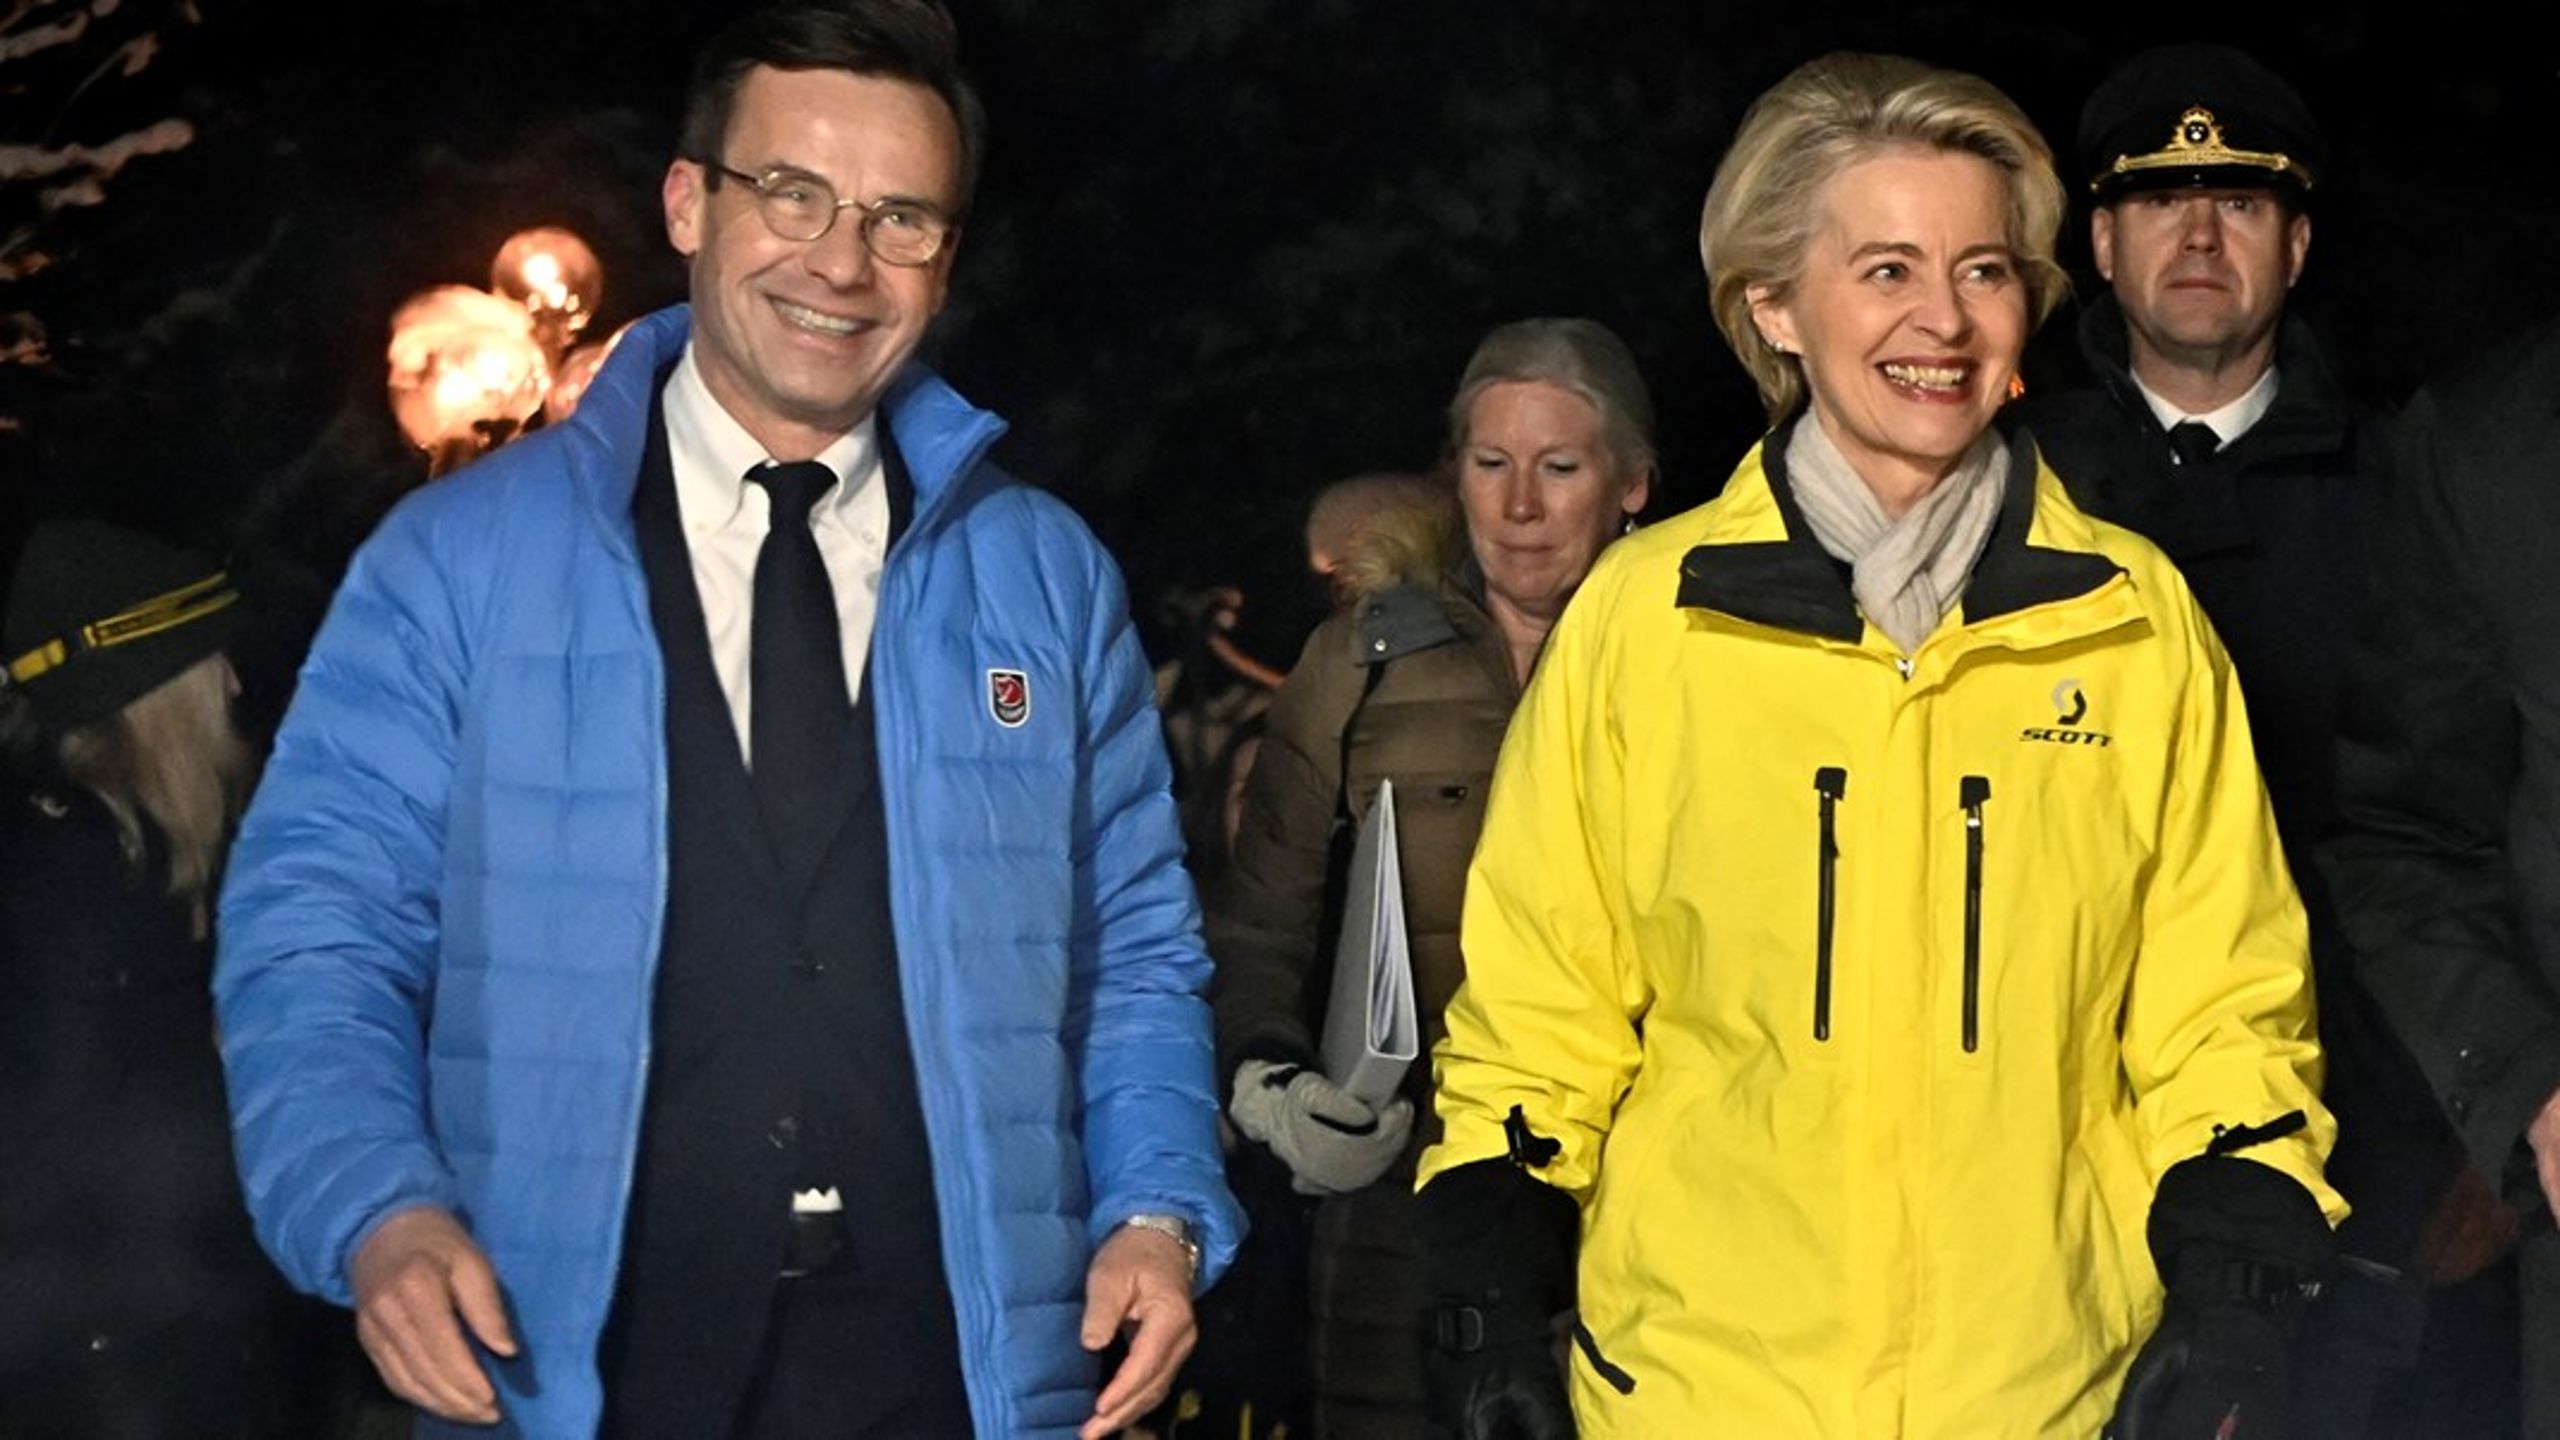 Statsminister Ulf Kristersson (M) och EU-kommissionens ordförande Ursula von der Leyen när de sågs på Ishotellet Jukkasjärvi i januari i år.